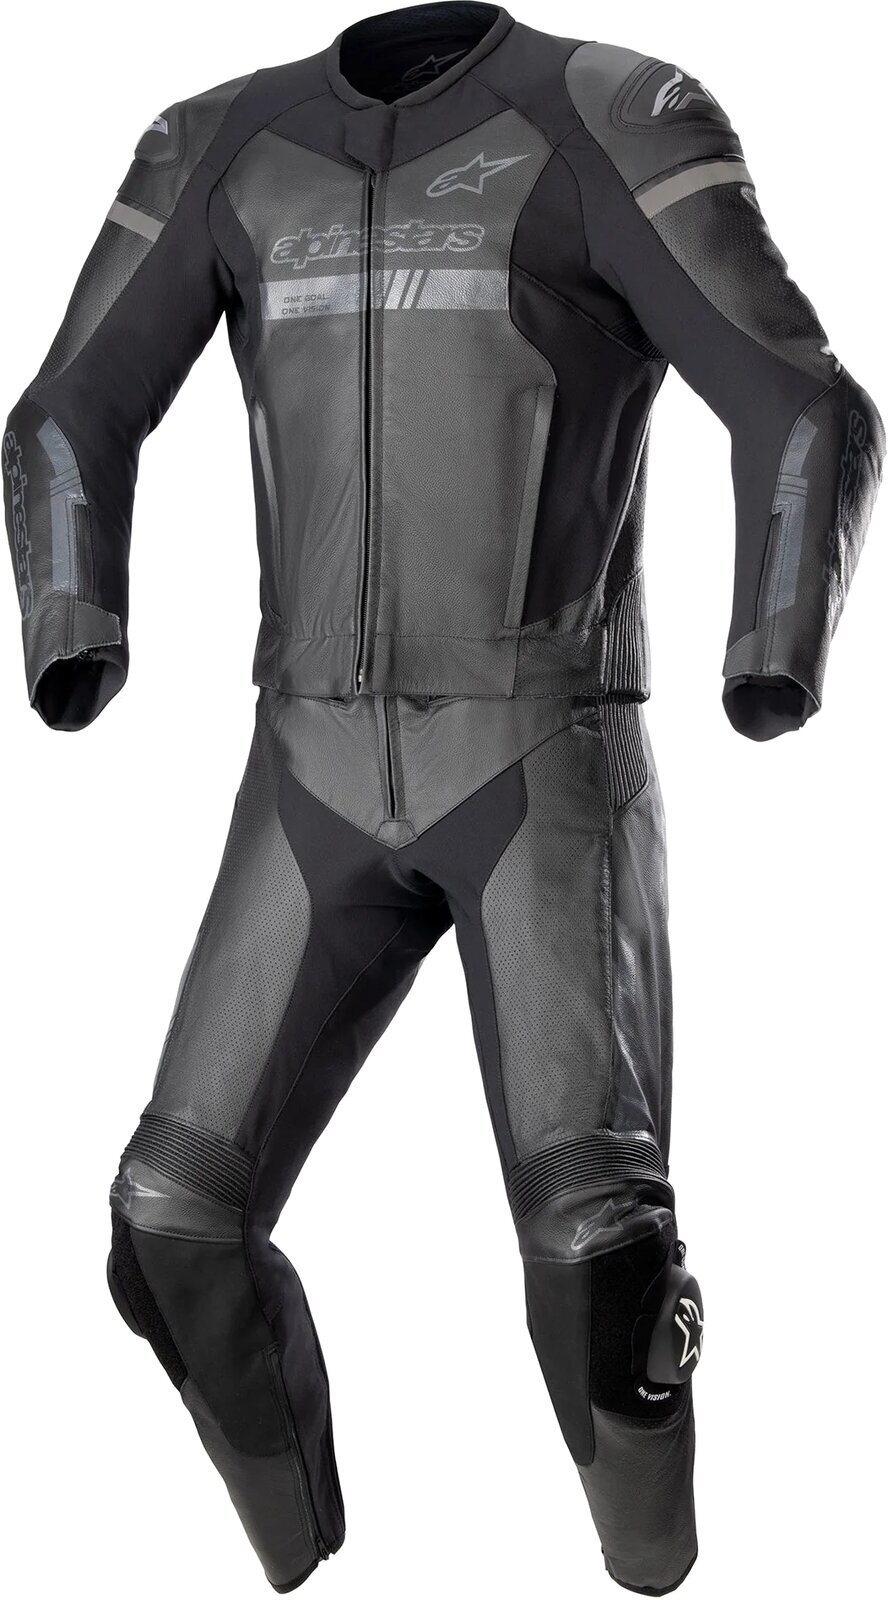 Zweiteiler Motorradkombis Alpinestars GP Force Chaser Leather Suit 2 Pc Black/Black 52 Zweiteiler Motorradkombis